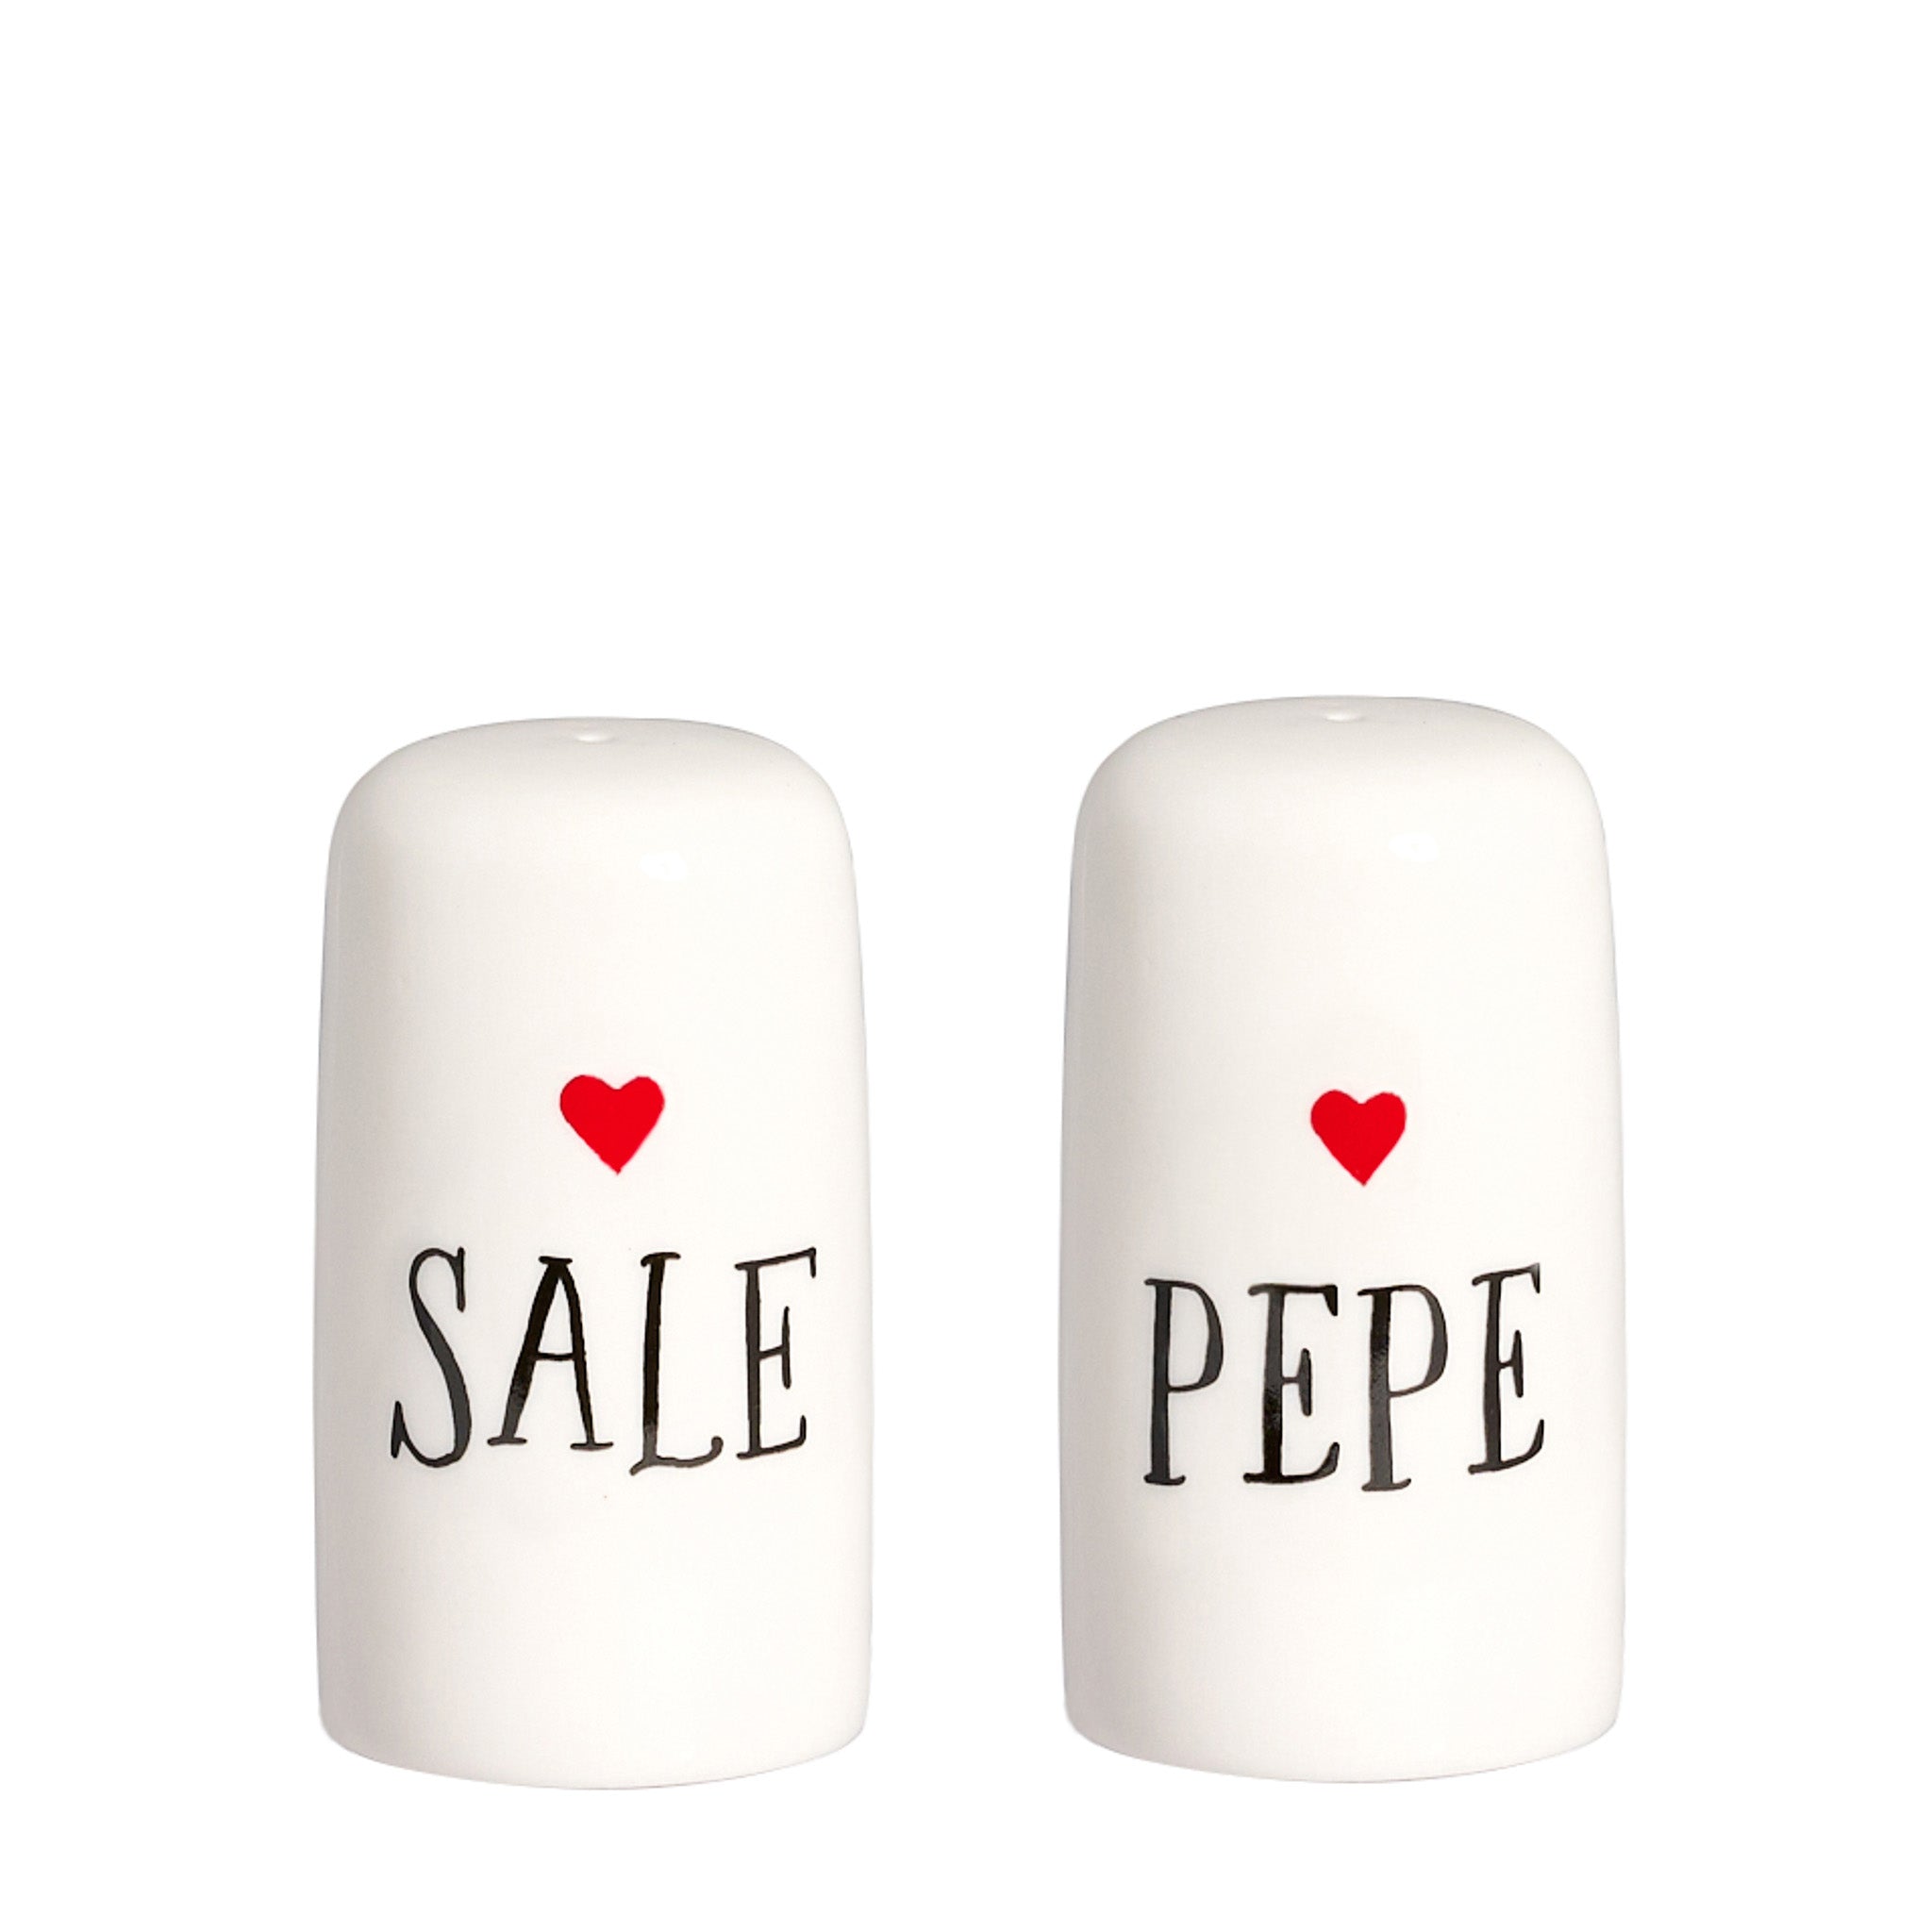 Set Sale e Pepe "Sale" - "Pepe" con cuore